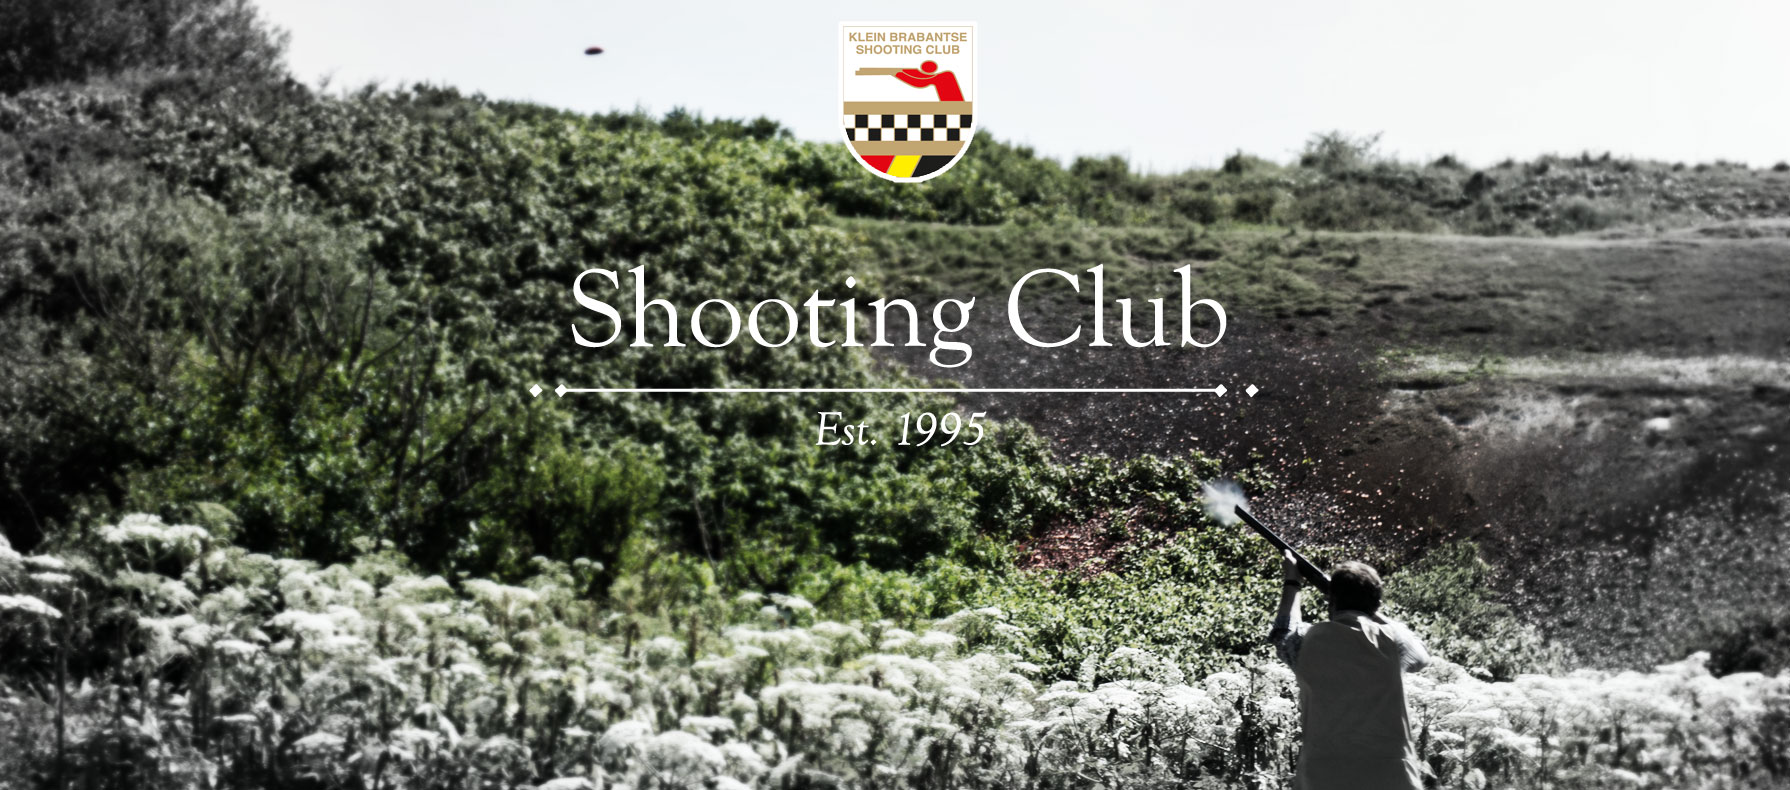 Shooting Club Ruisbroek Puurs